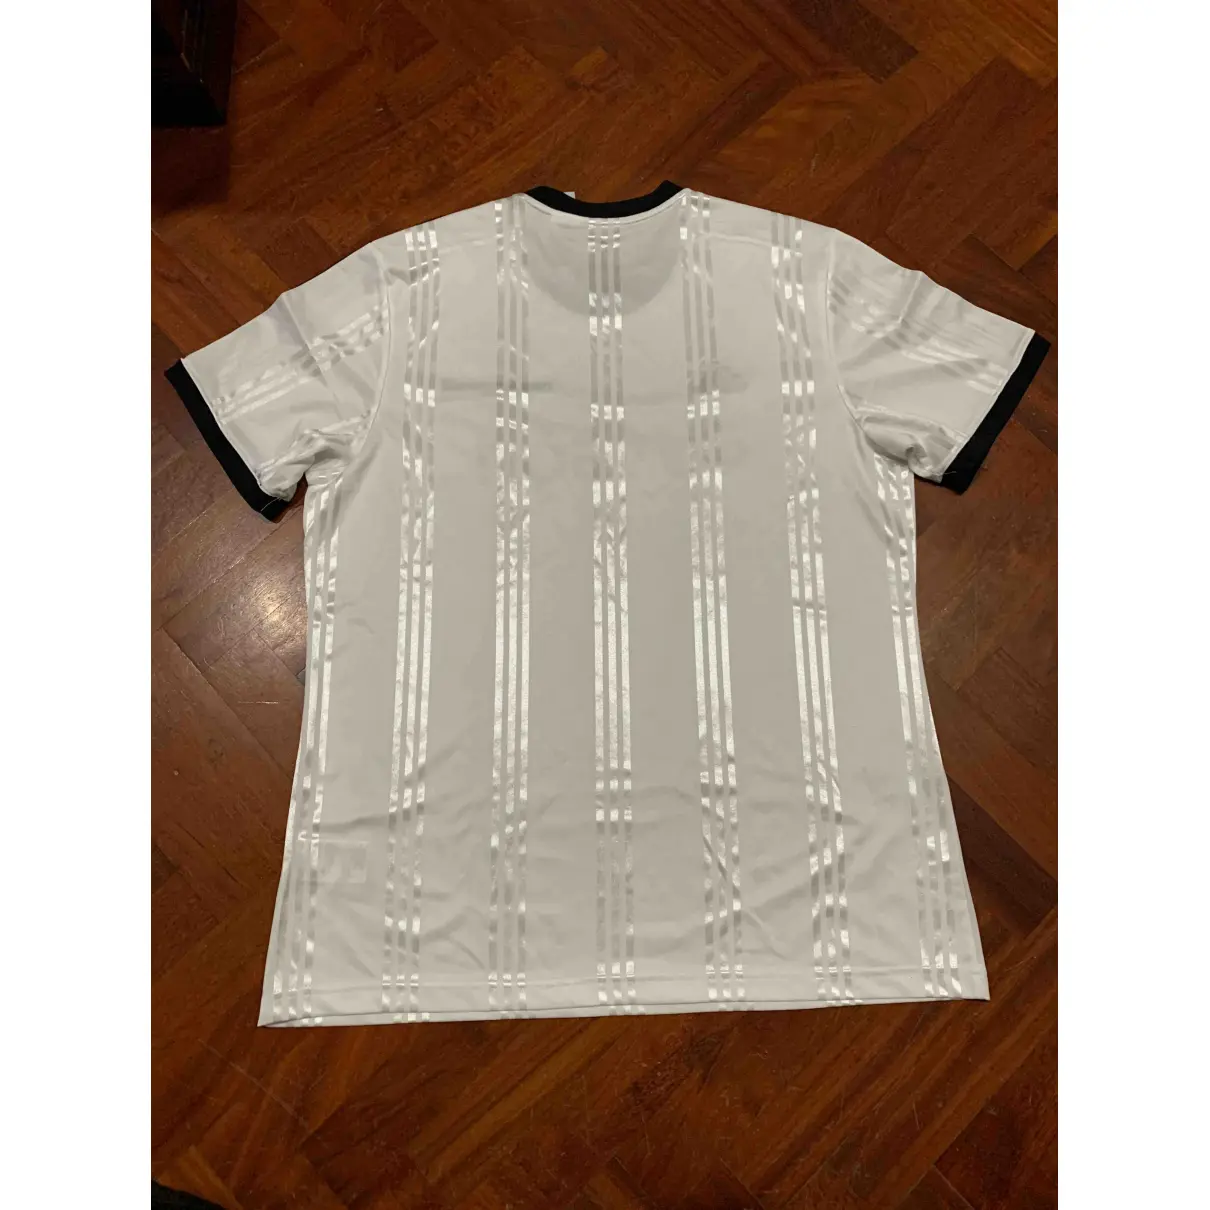 Buy Adidas x Gosha Rubchinskiy White Polyester T-shirt online